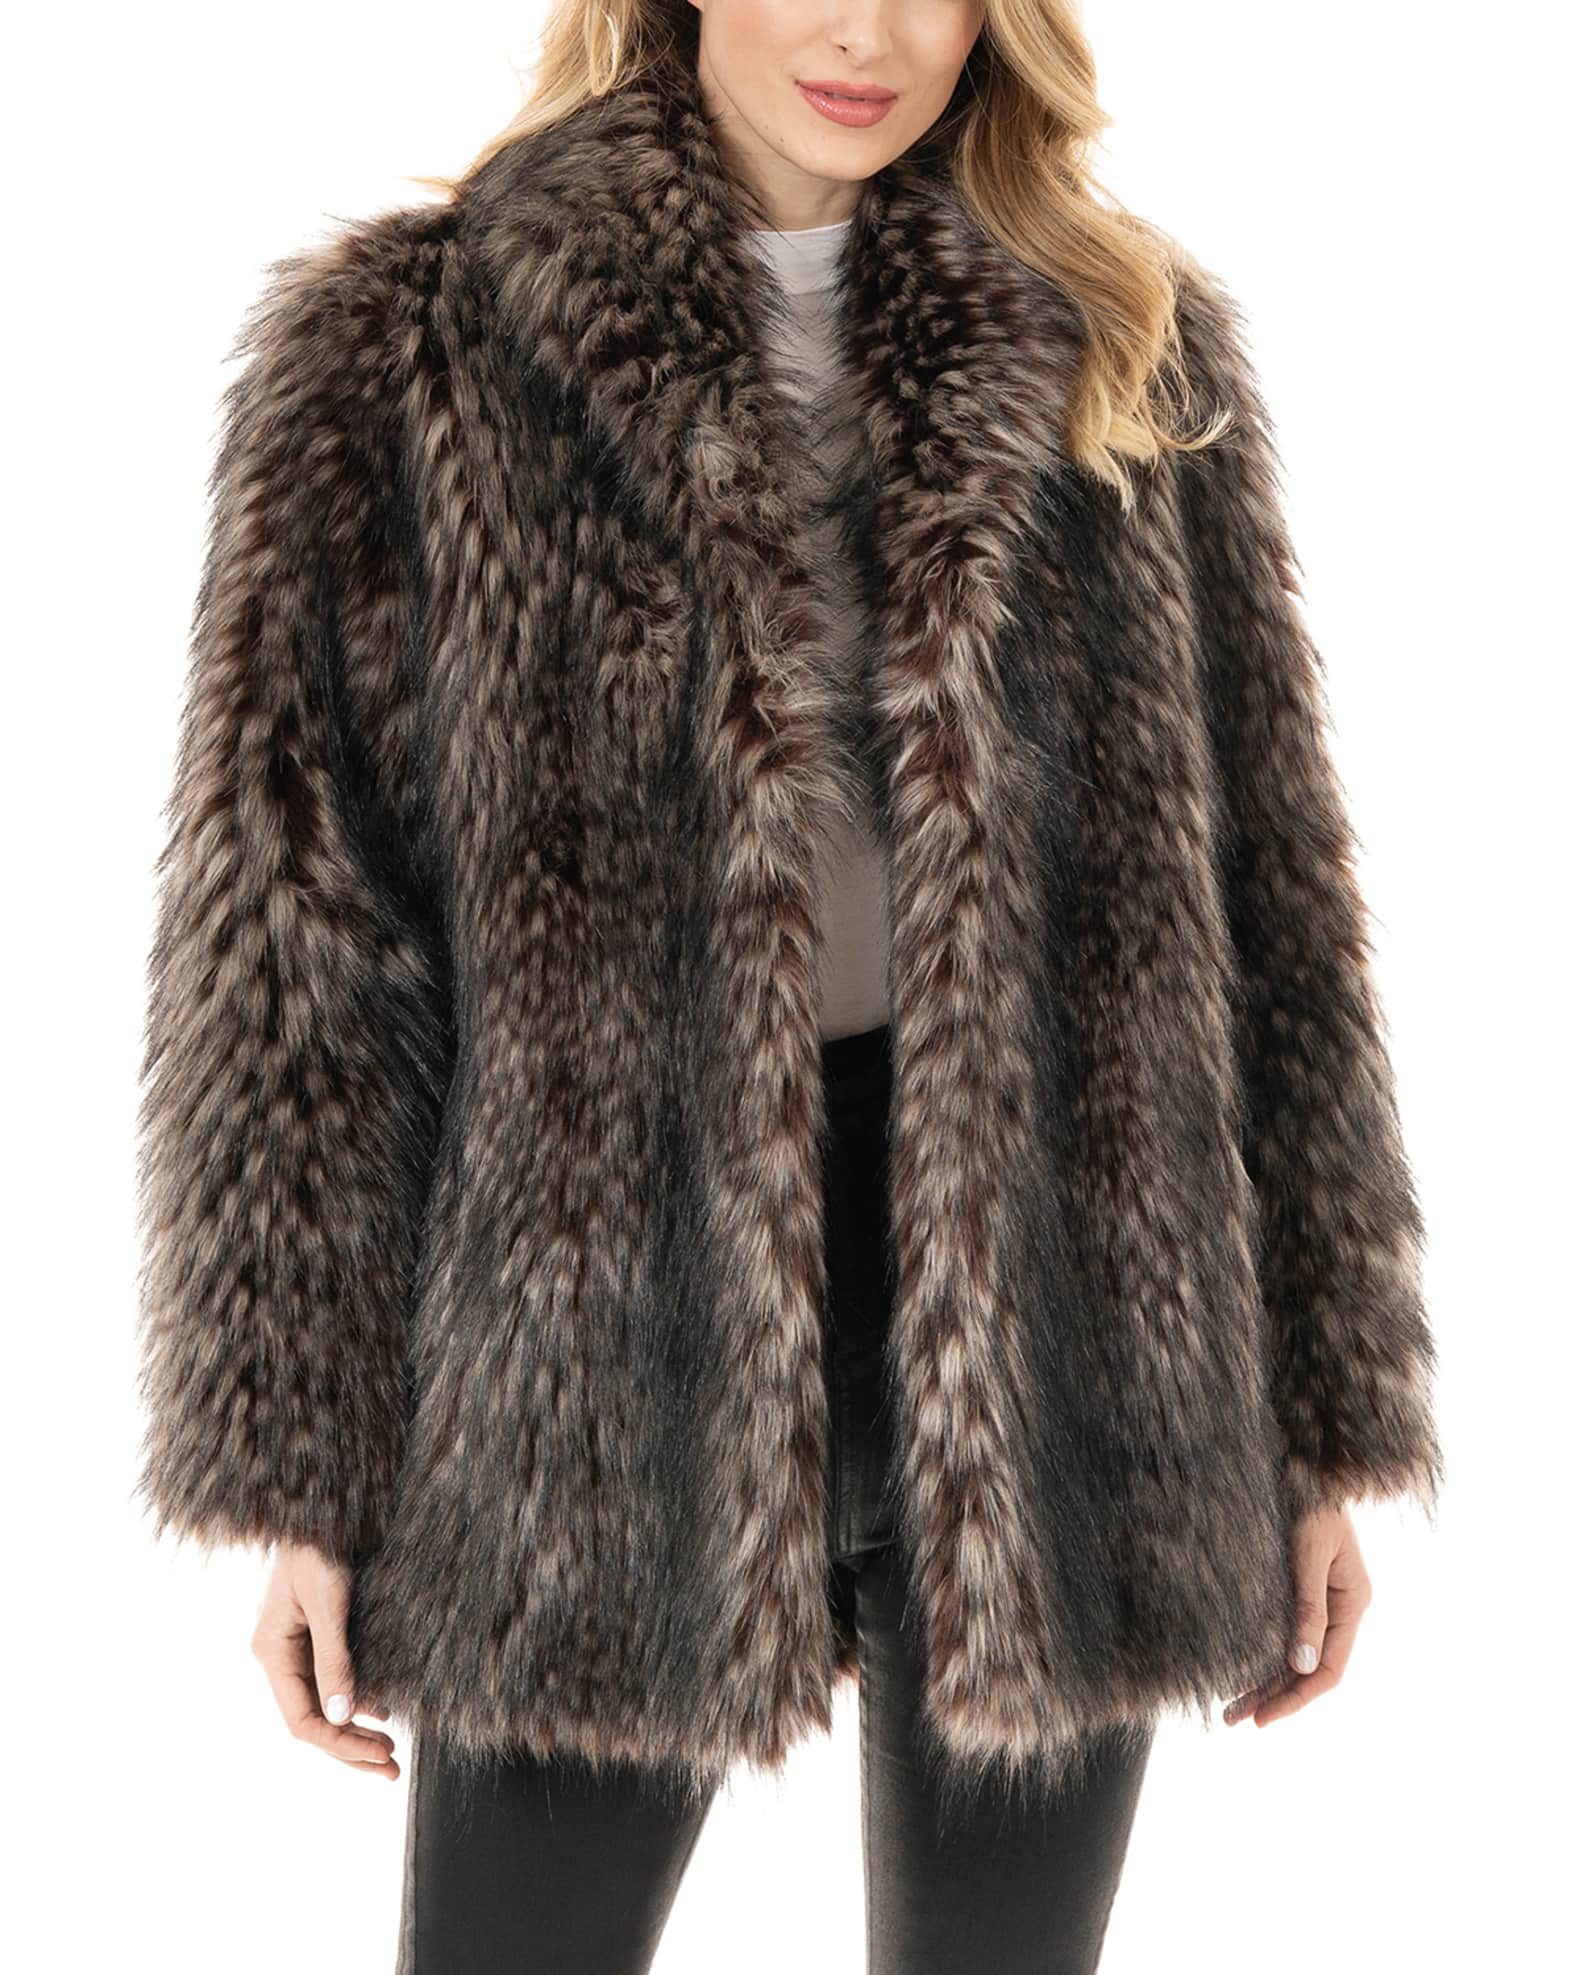 Fabulous Furs Limited Edition Faux Fur Coat | Neiman Marcus